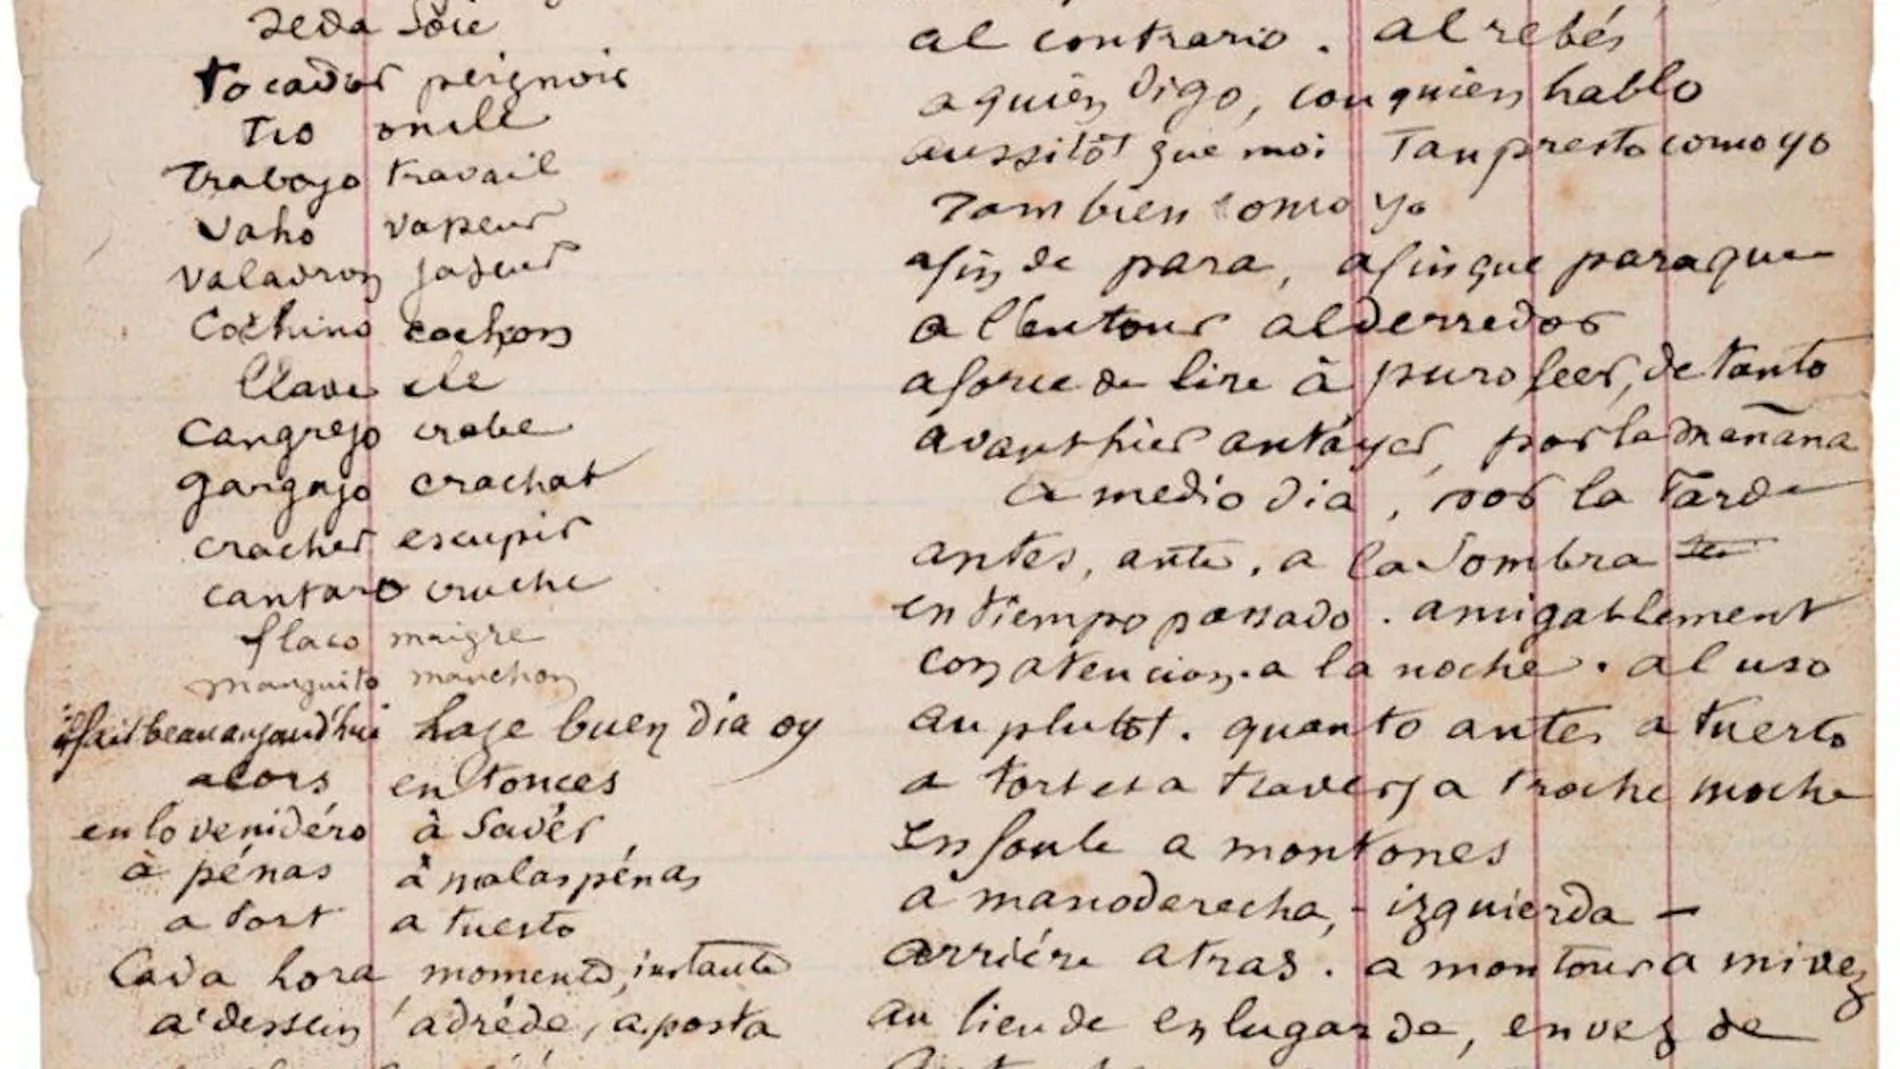 El manuscrito de Rimbaud con su particular diccionario francés-español